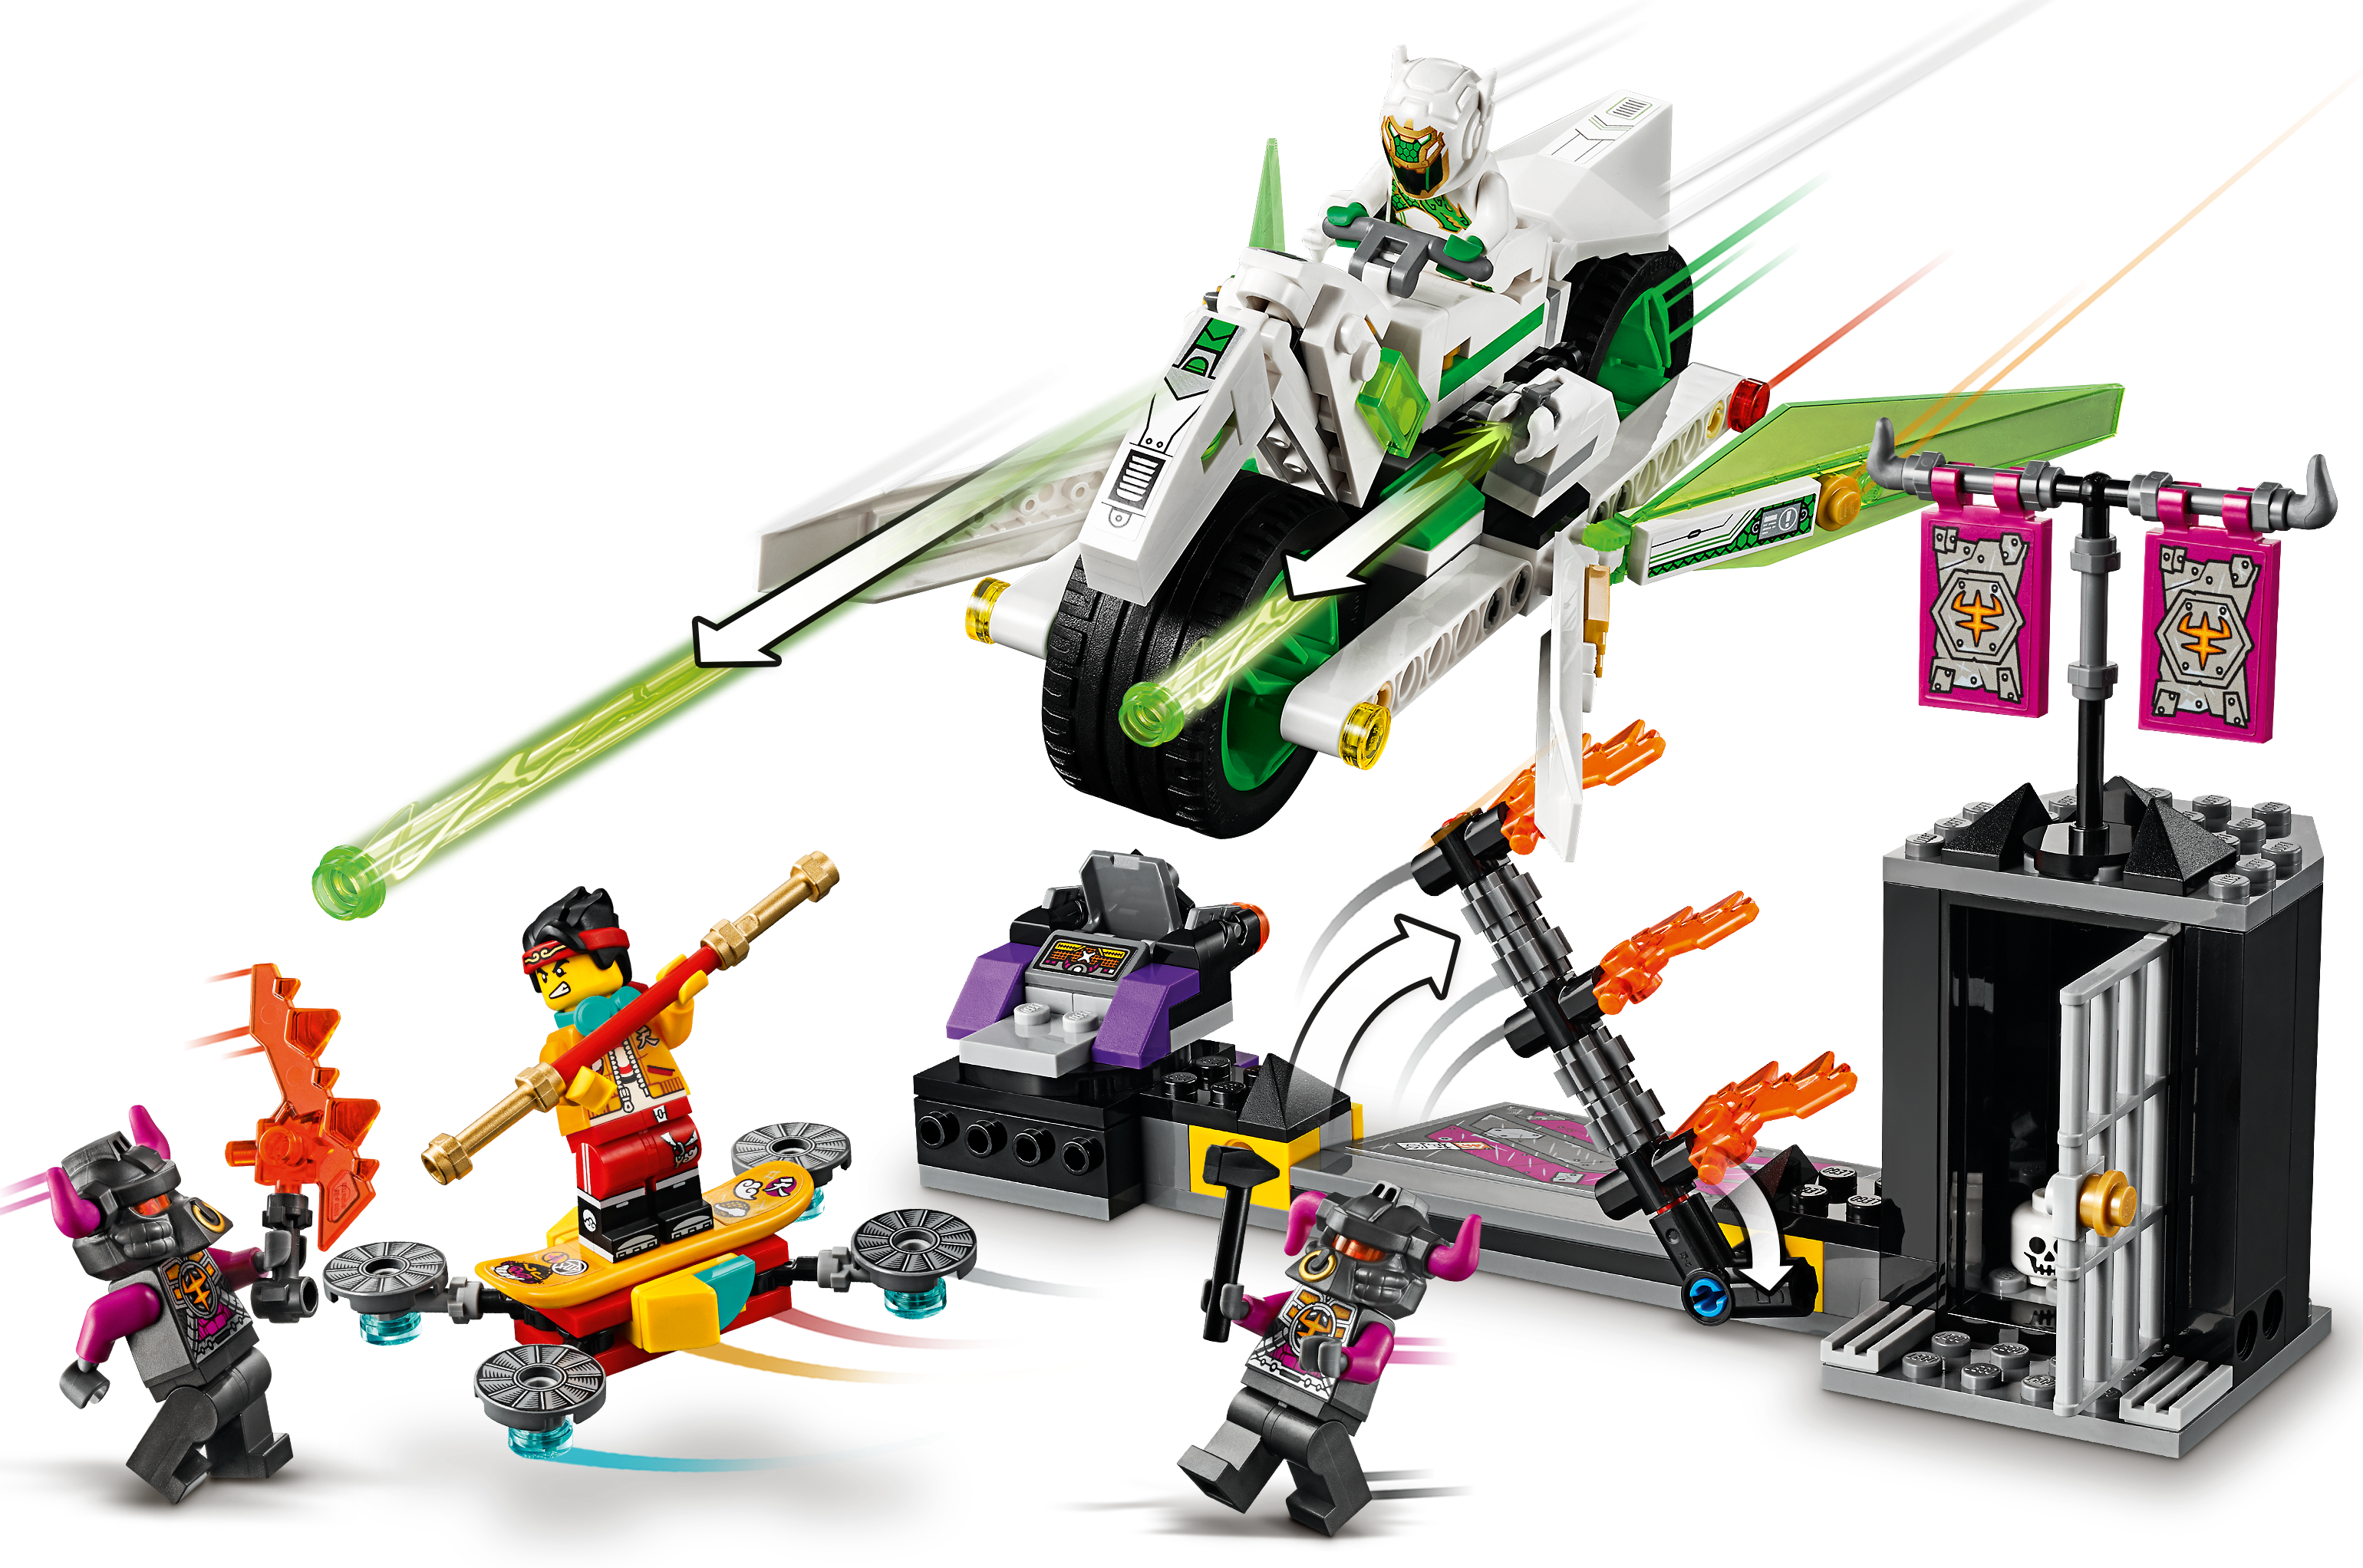 White Armor minifigure Monkie Kid 80006 White Dragon Details about   NEW LEGO Mei mk003